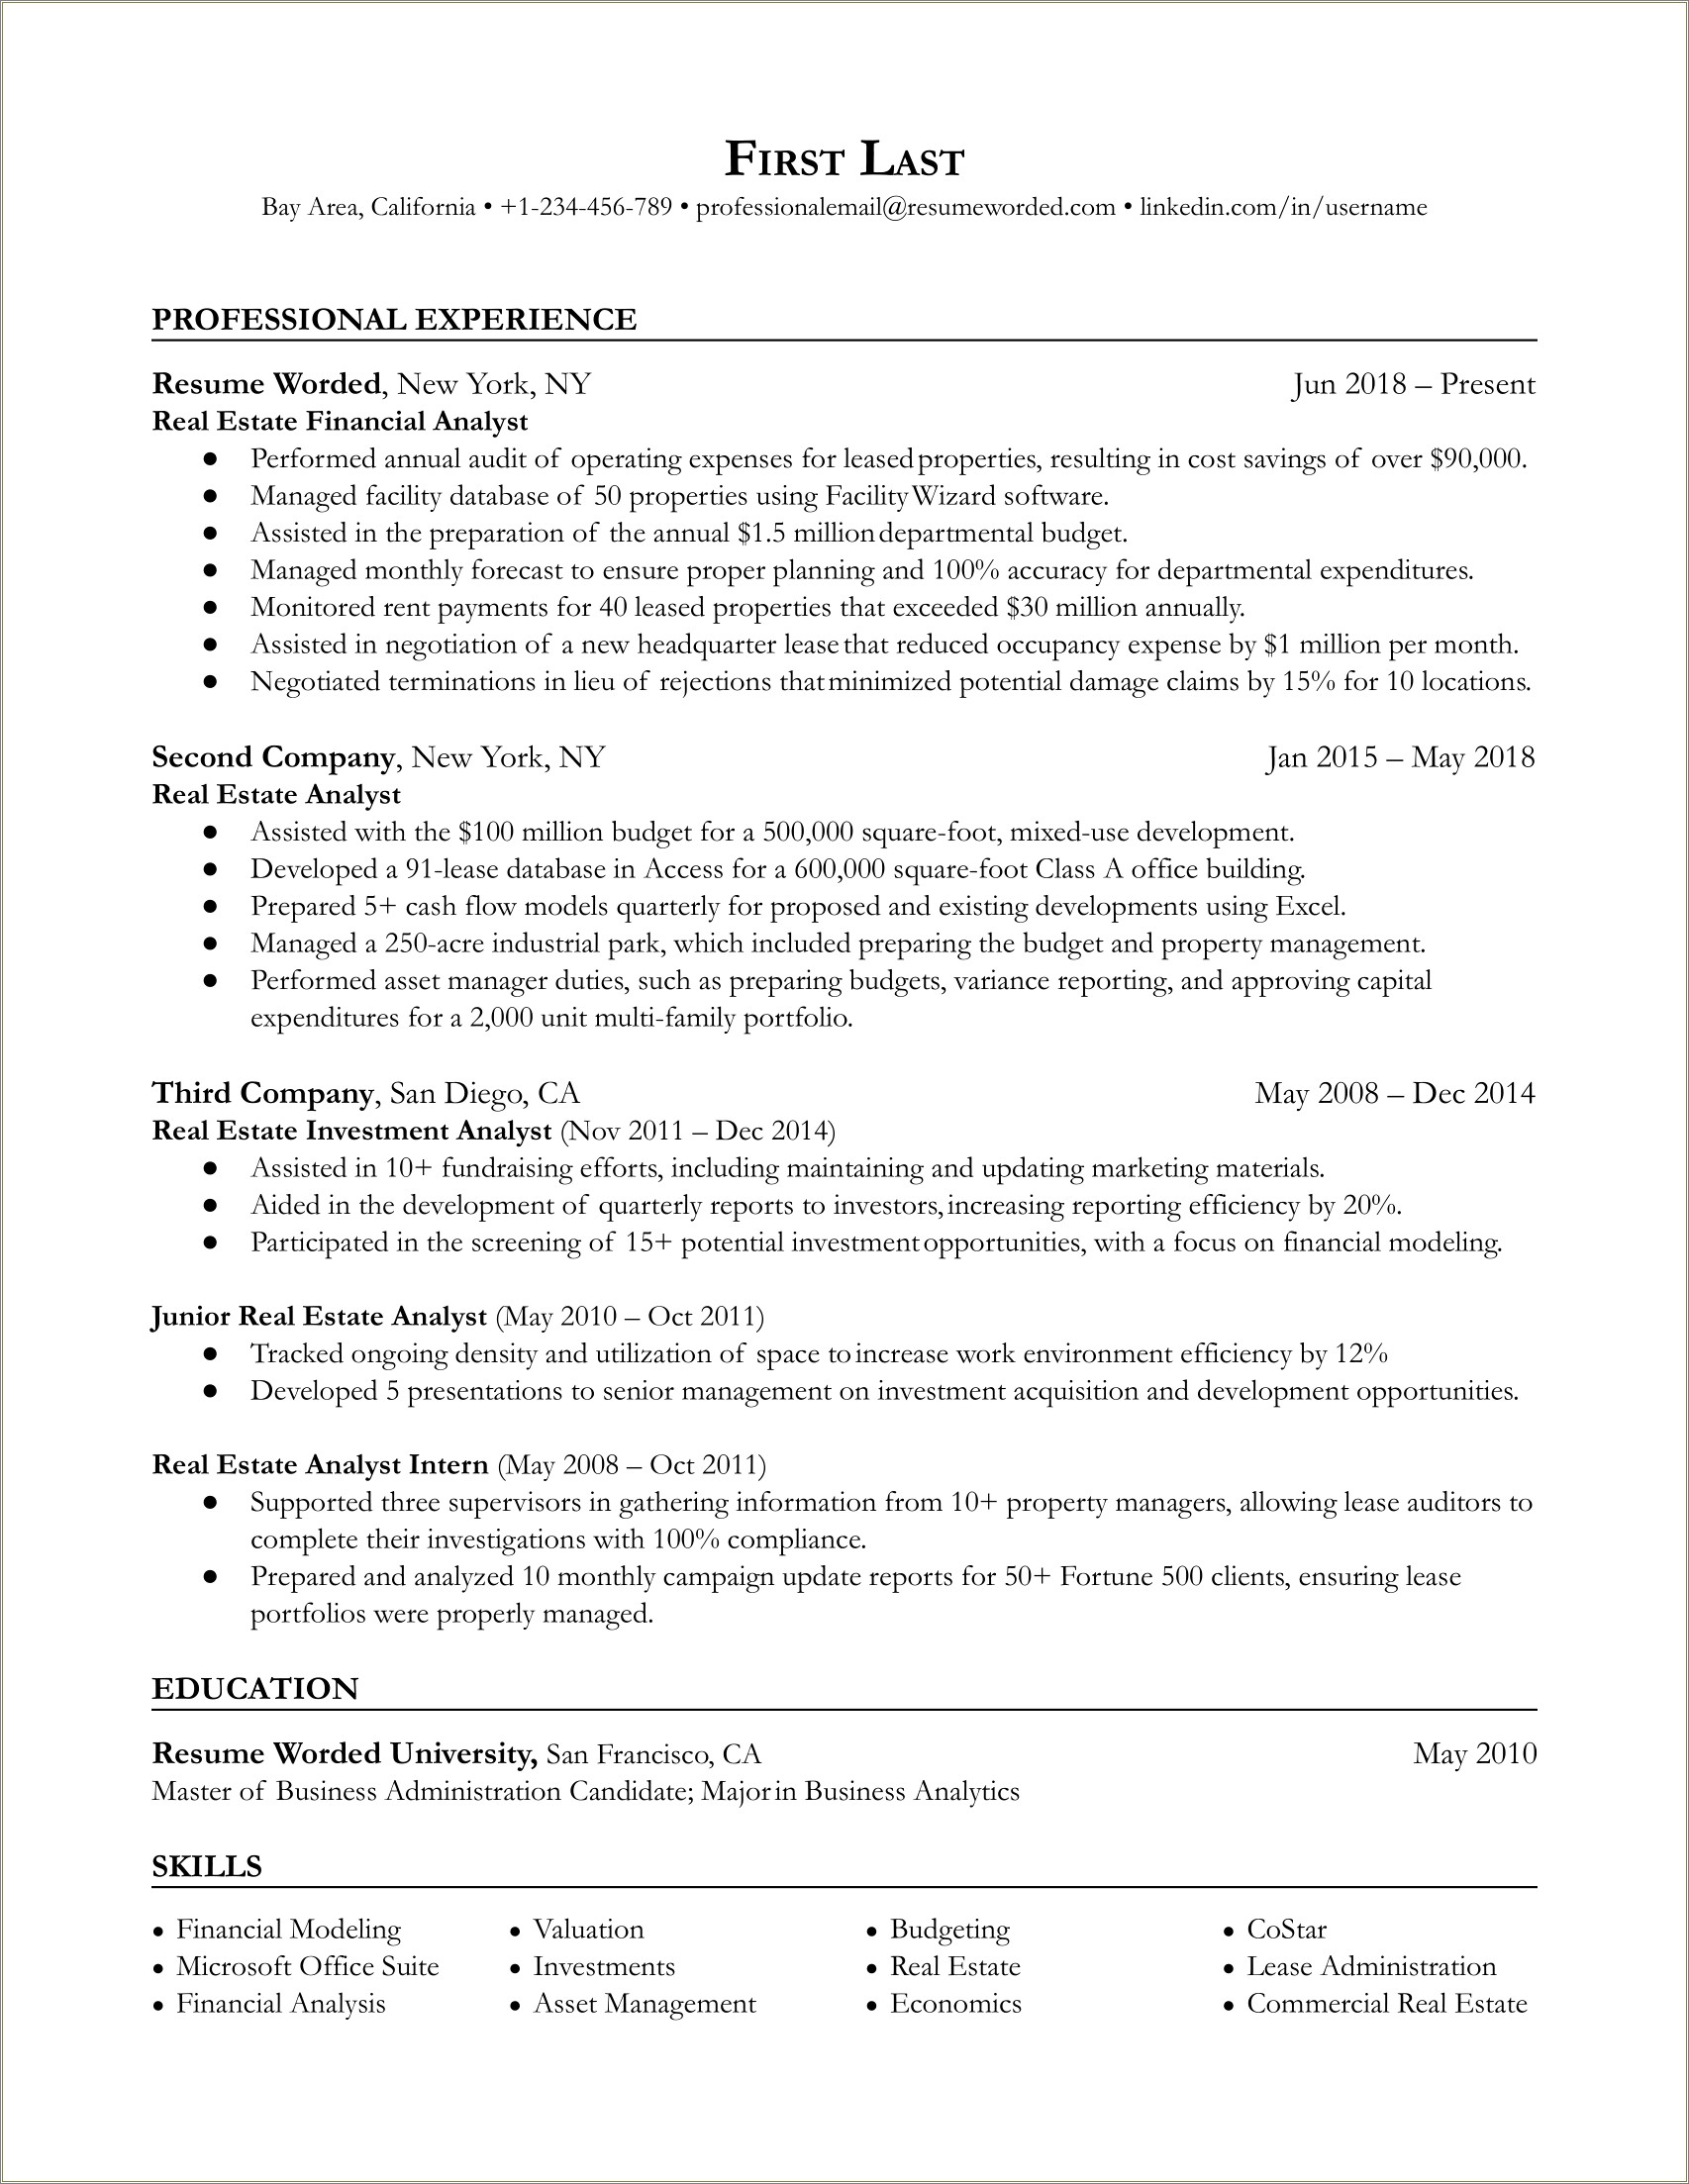 Resume For Entry Level Finance Jobs